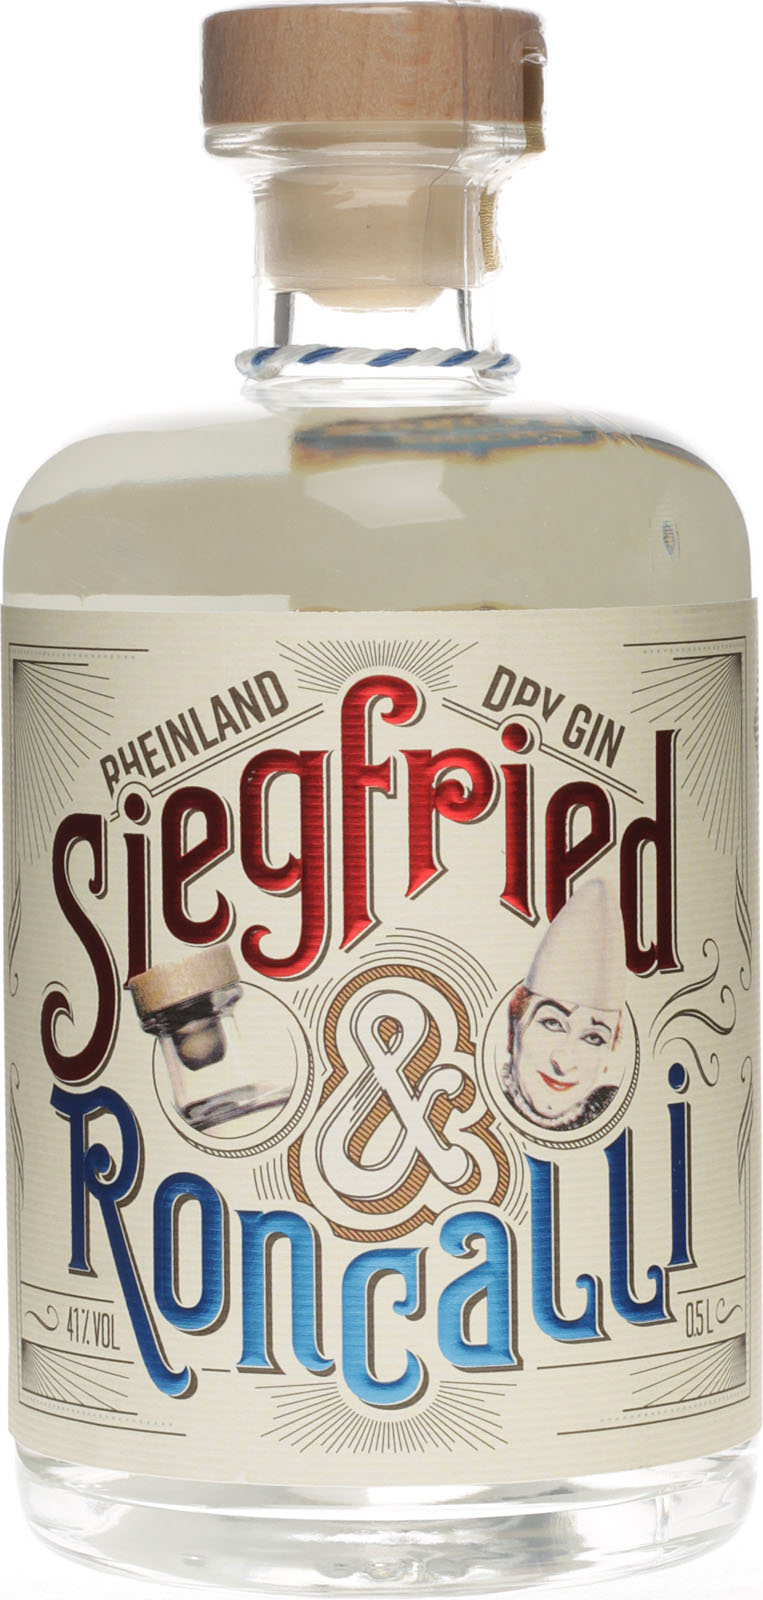 Siegfried Rheinland Roncalli Edition Dry Gin Liter 0,5